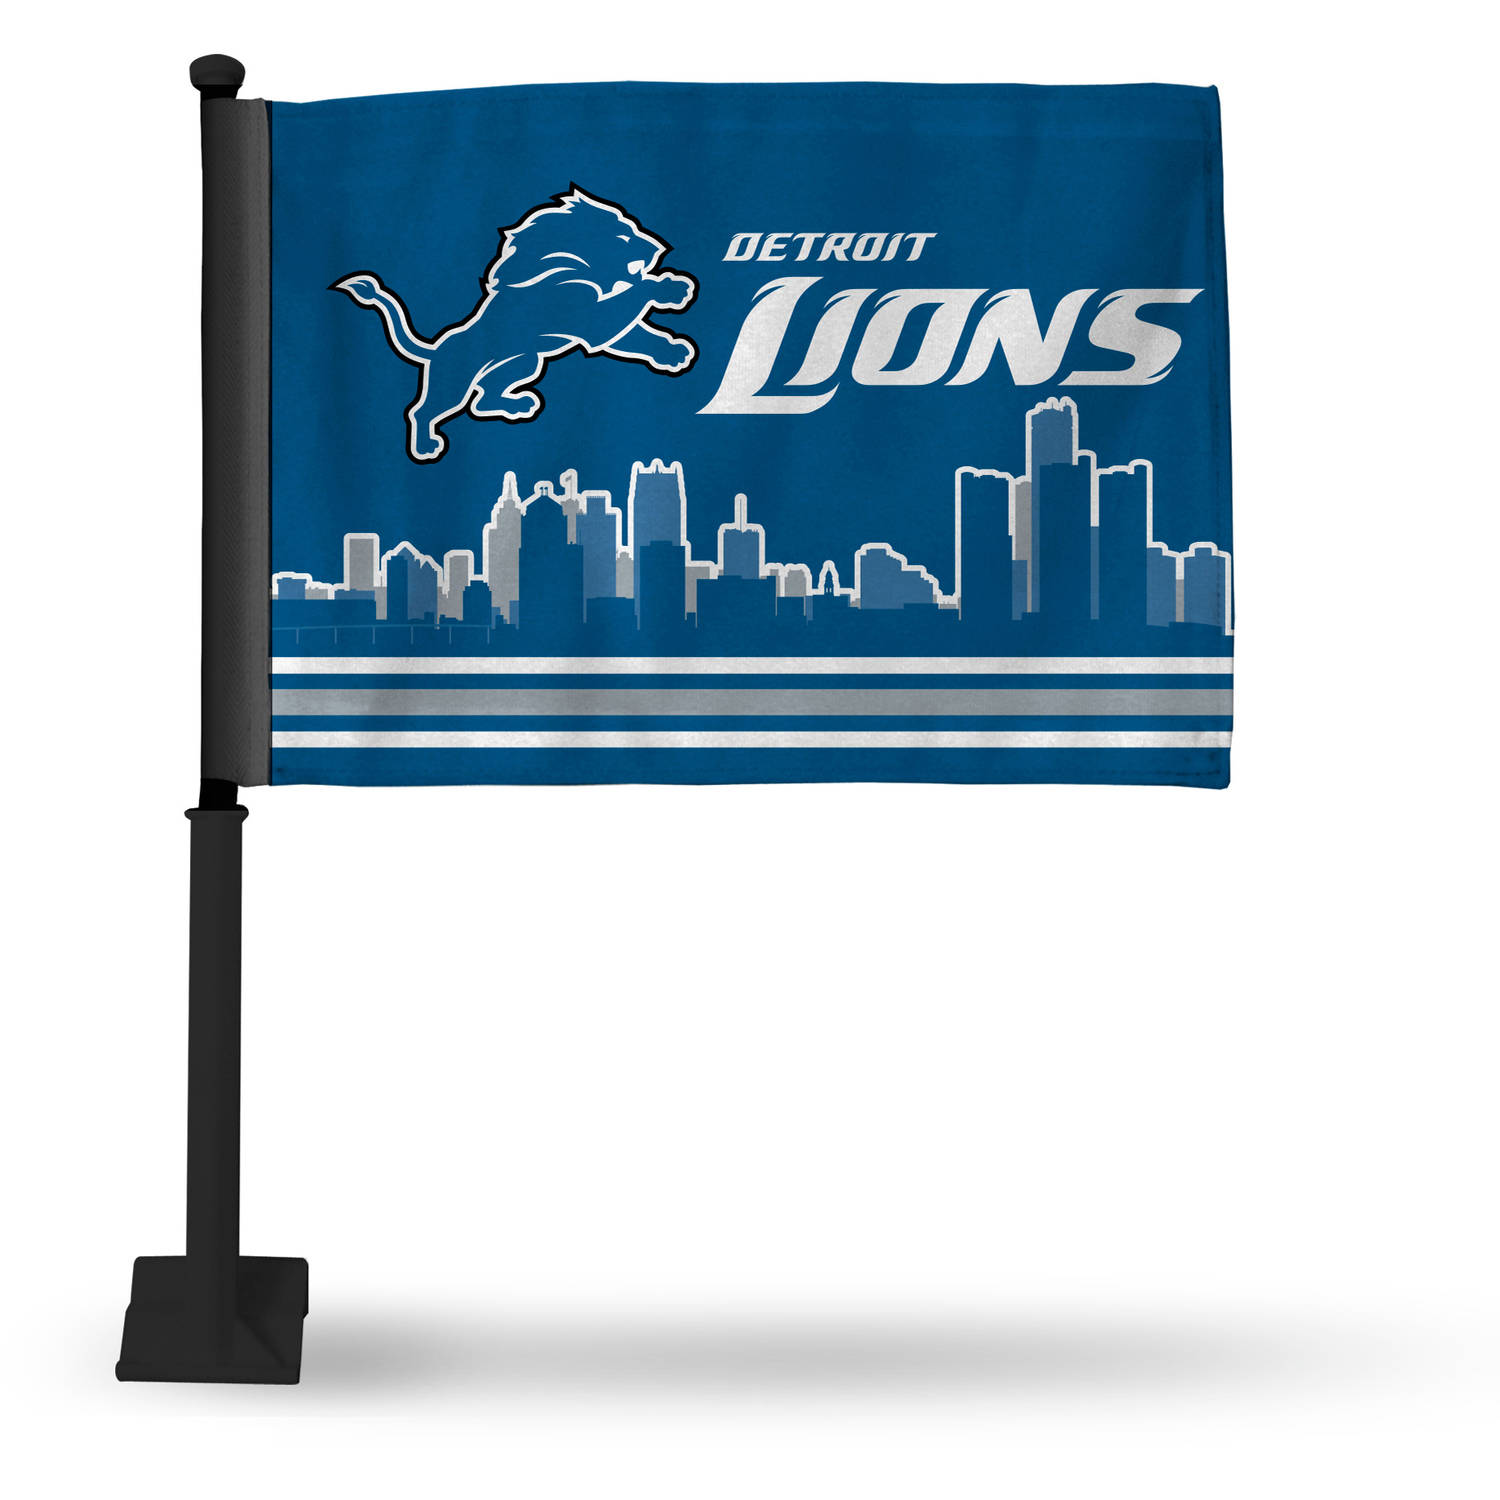 Detroit Lions Lions Carflag Mtc - image 1 of 1